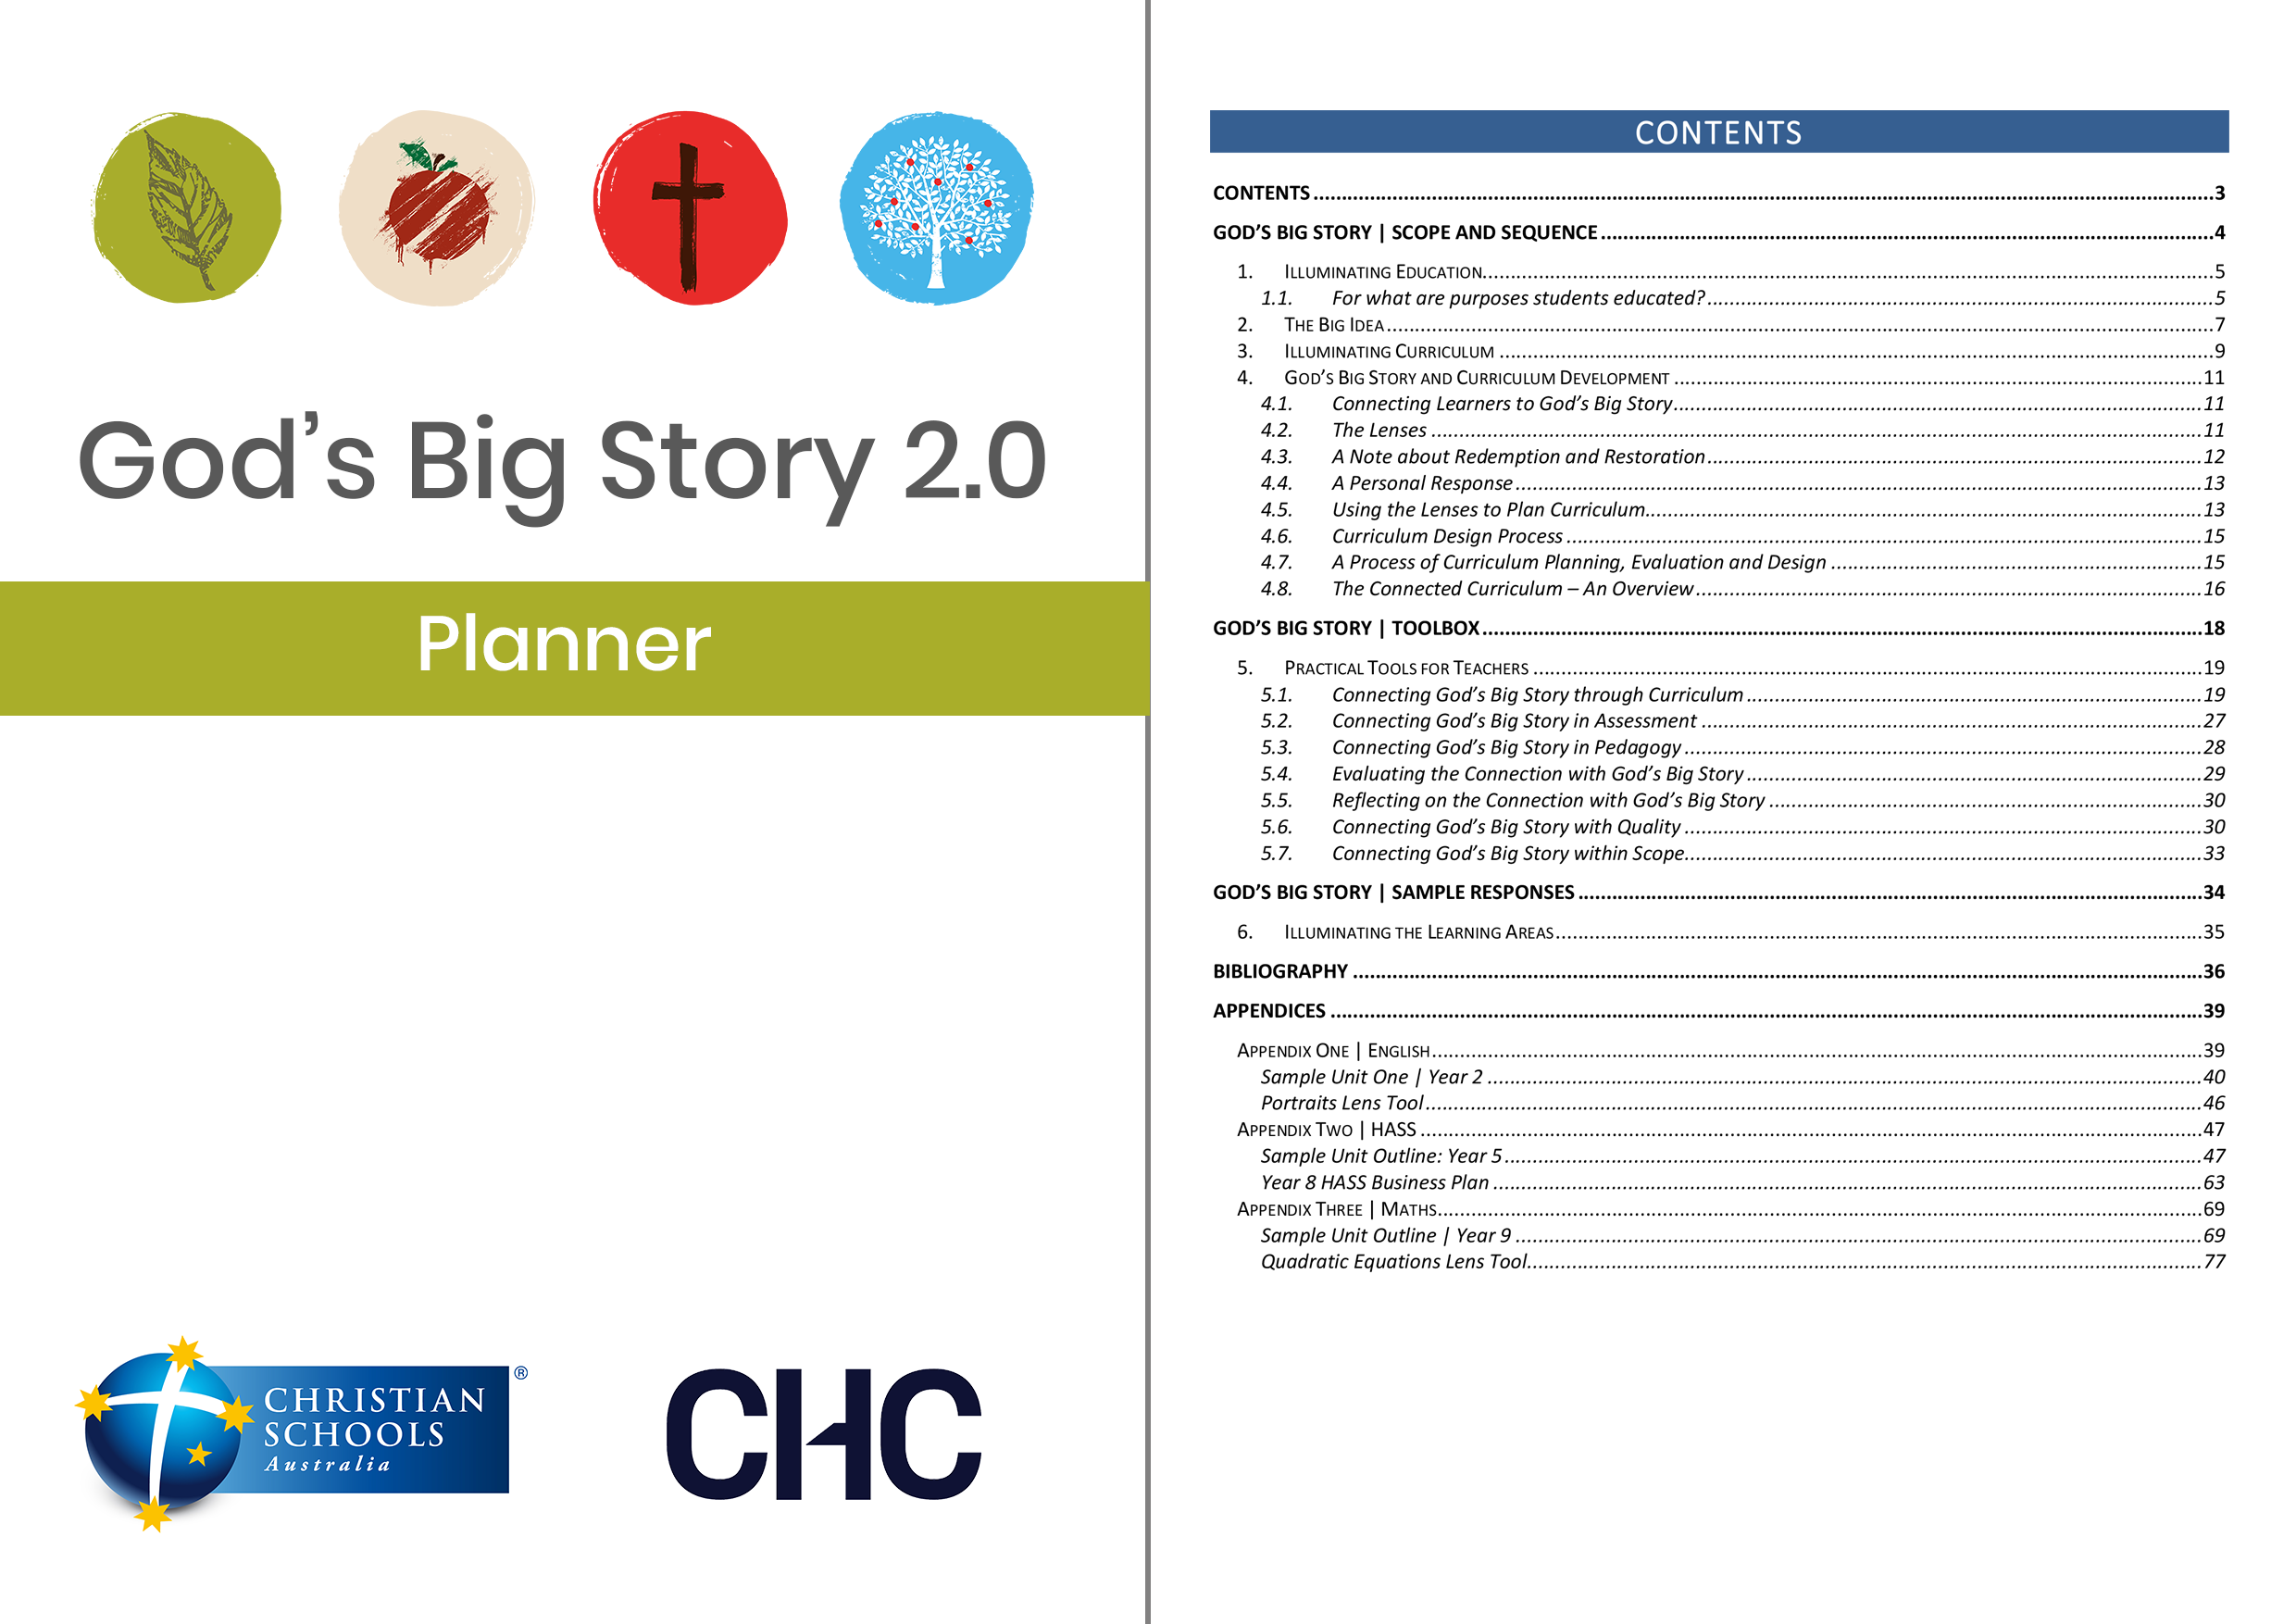 God's Big Story 2.0: Planner